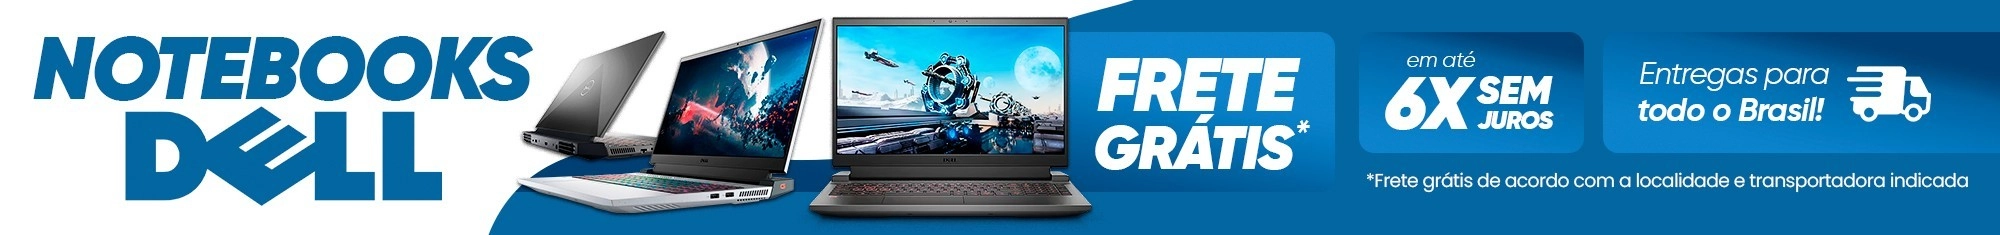 Noteboook Dell - Promoção Até 50% OFF | Saldão da Informática